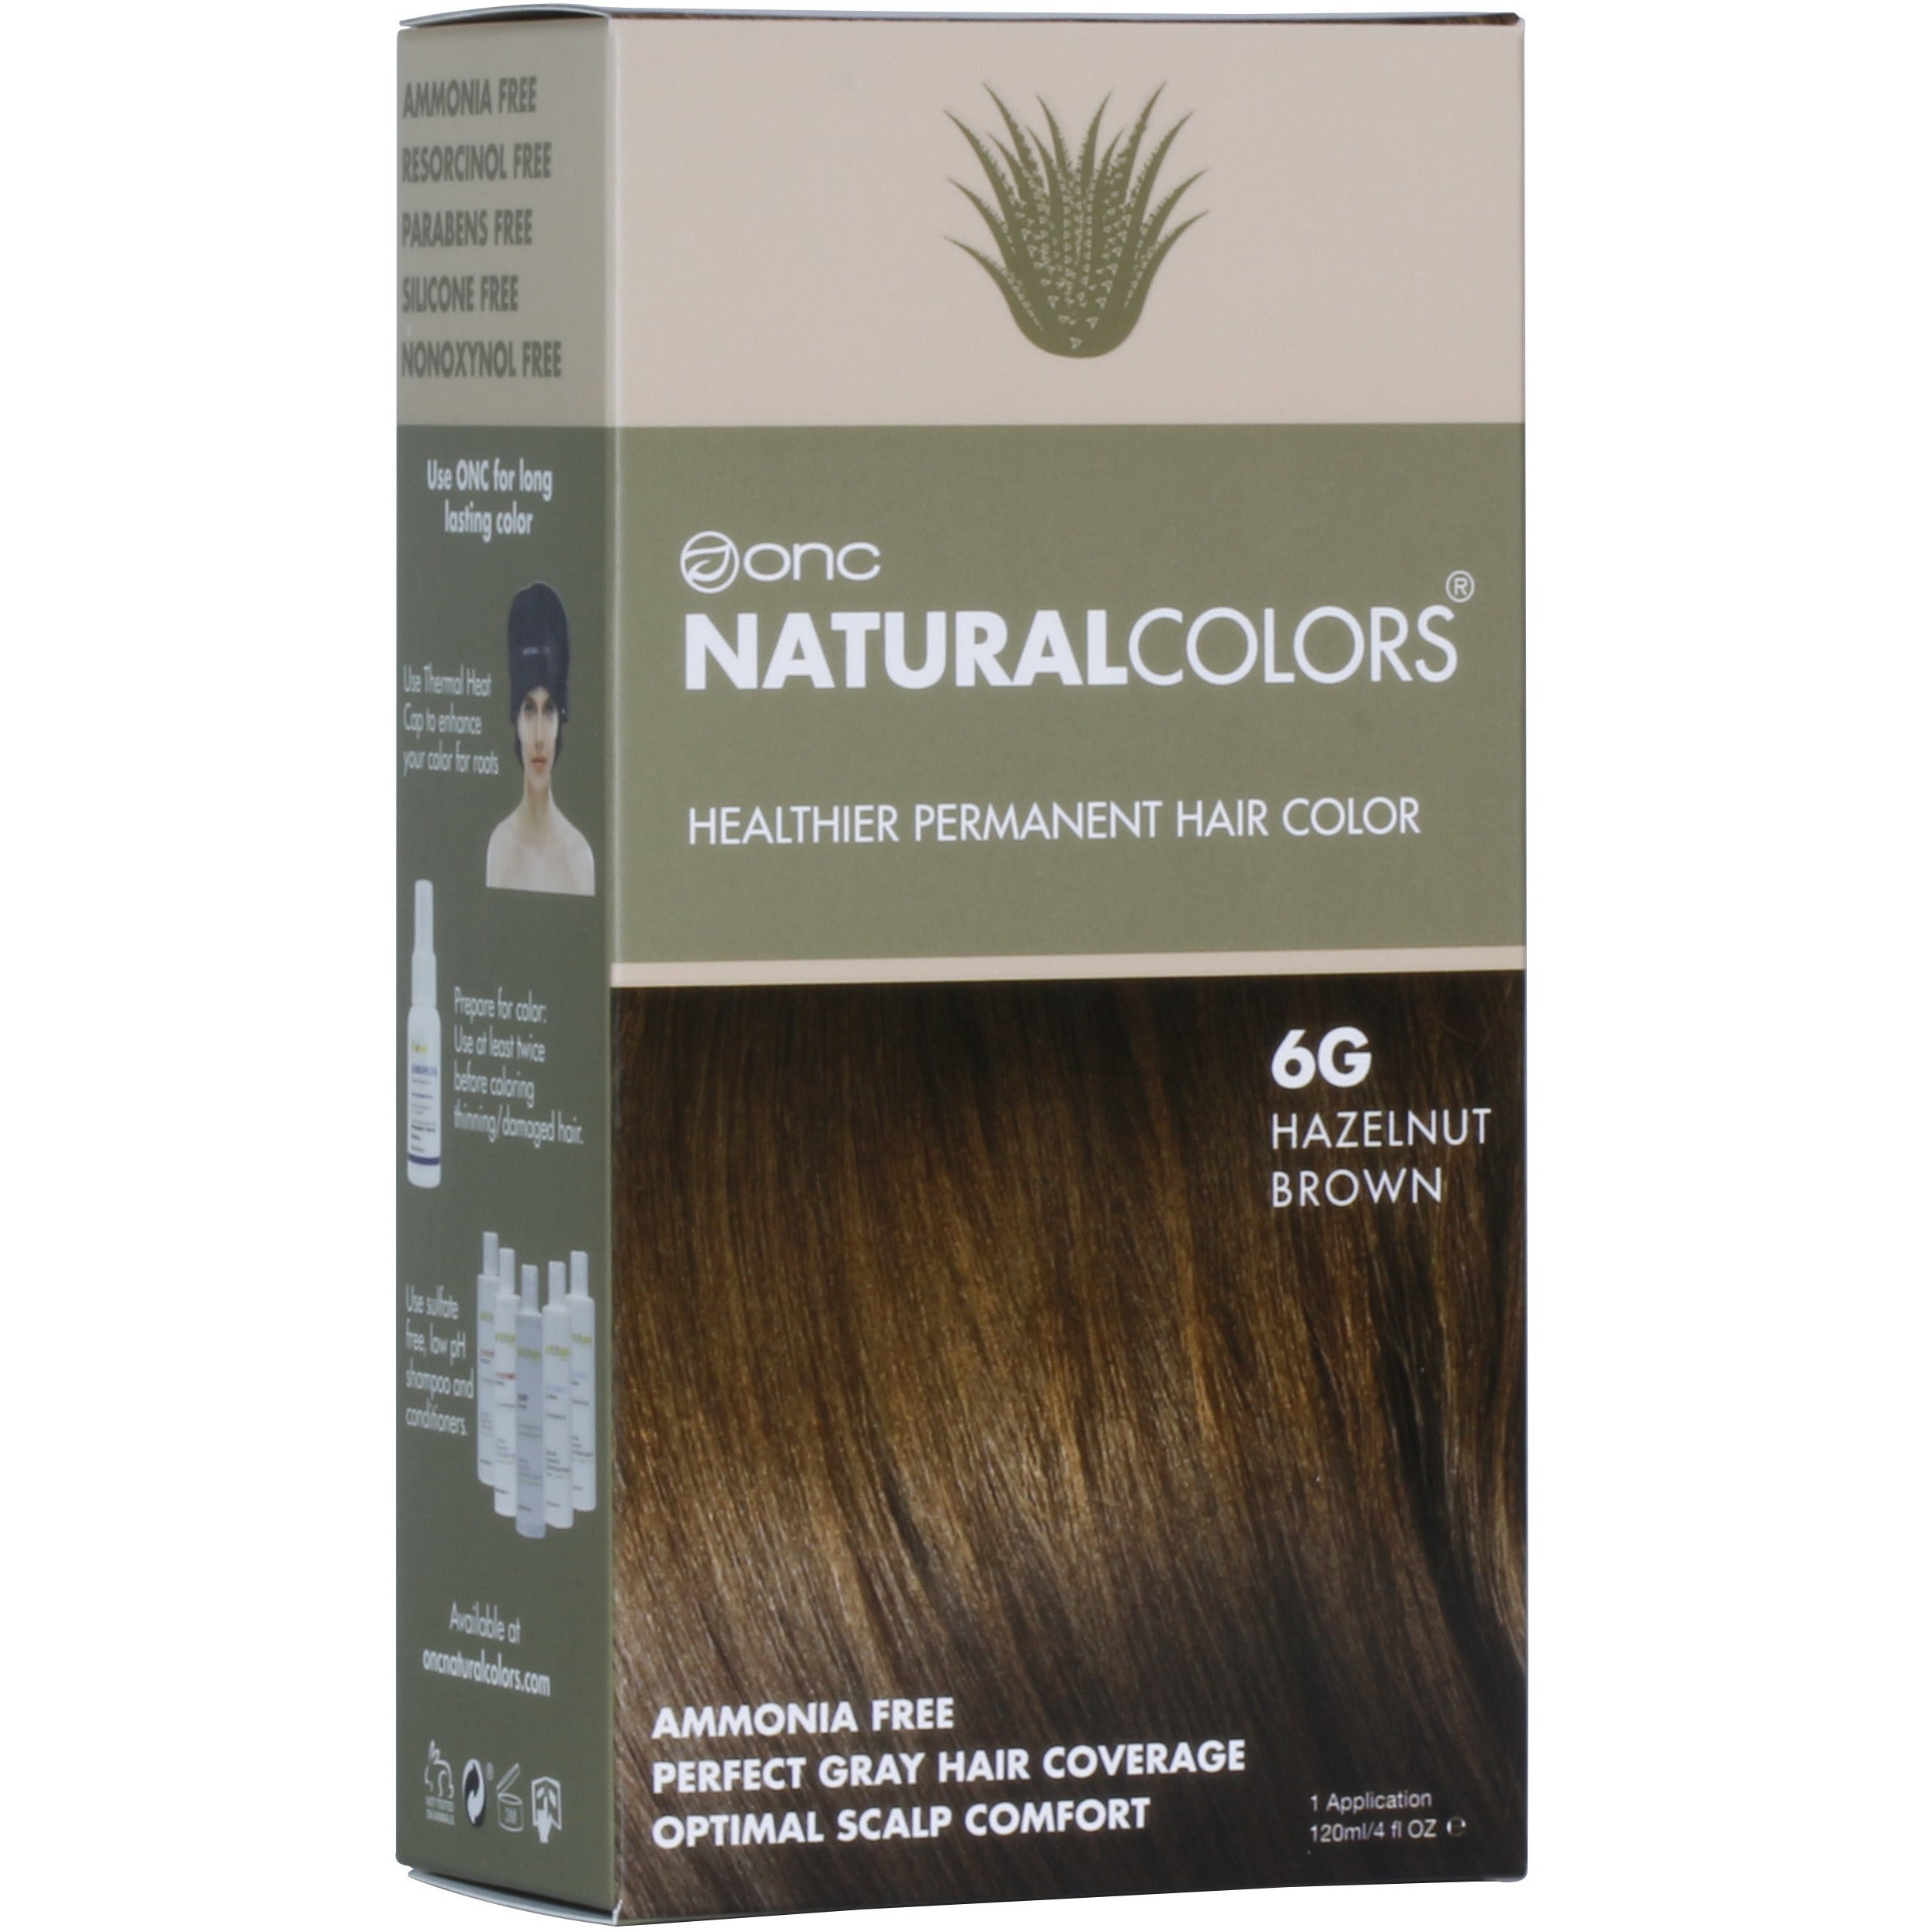 6G Hazelnut Brown Heat Activated Hair Dye With Organic Ingredients - 120 ml (4 fl. oz)